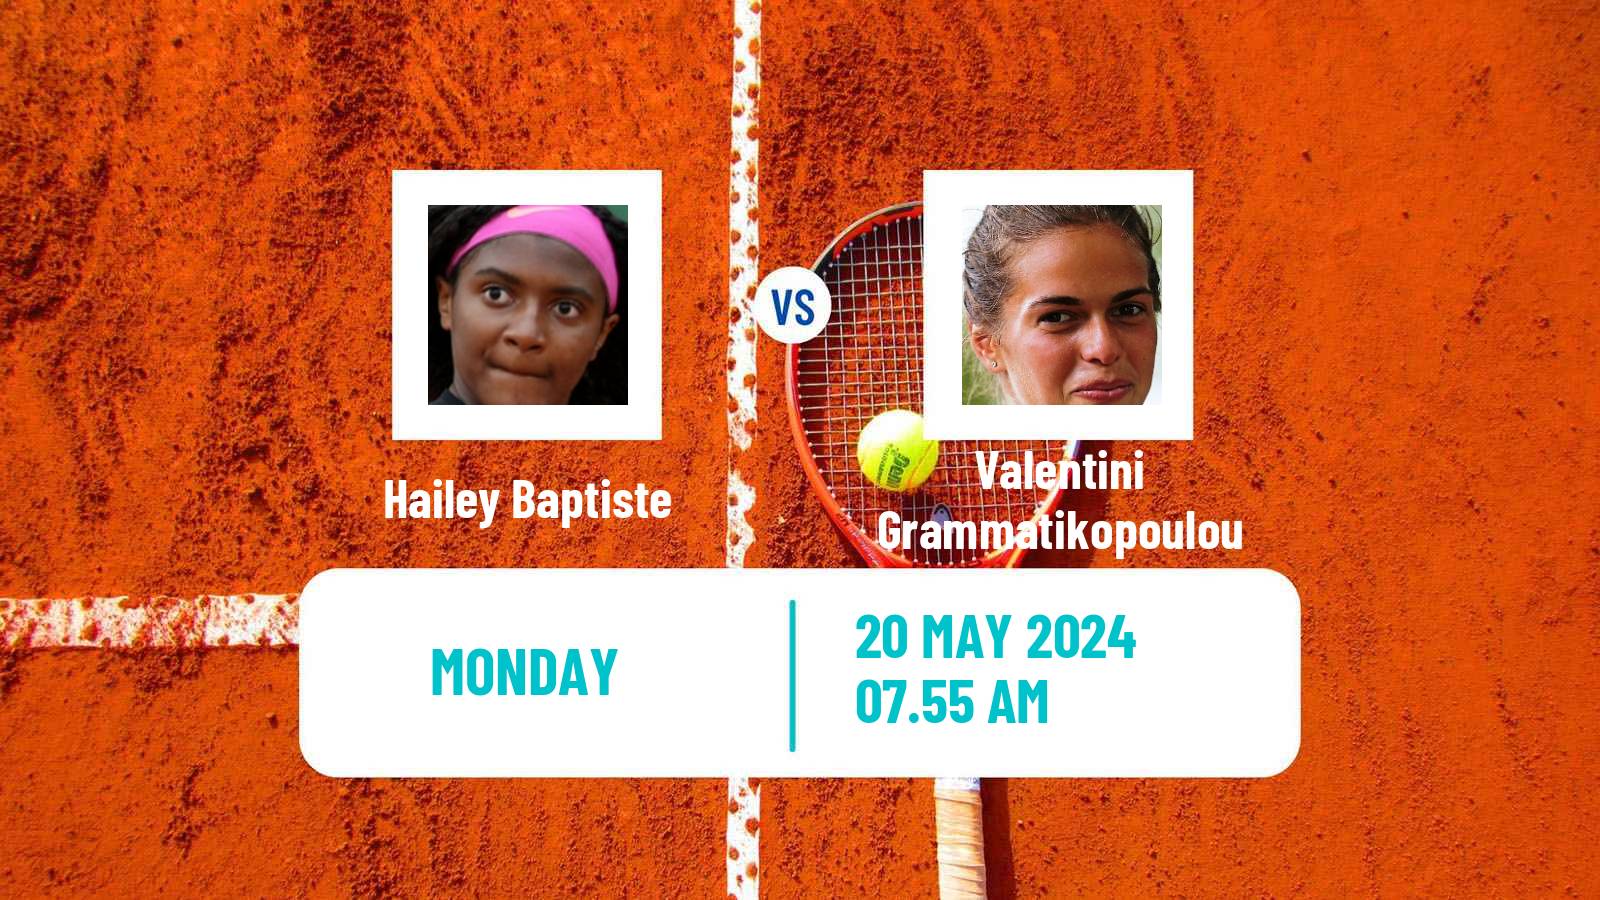 Tennis WTA Roland Garros Hailey Baptiste - Valentini Grammatikopoulou